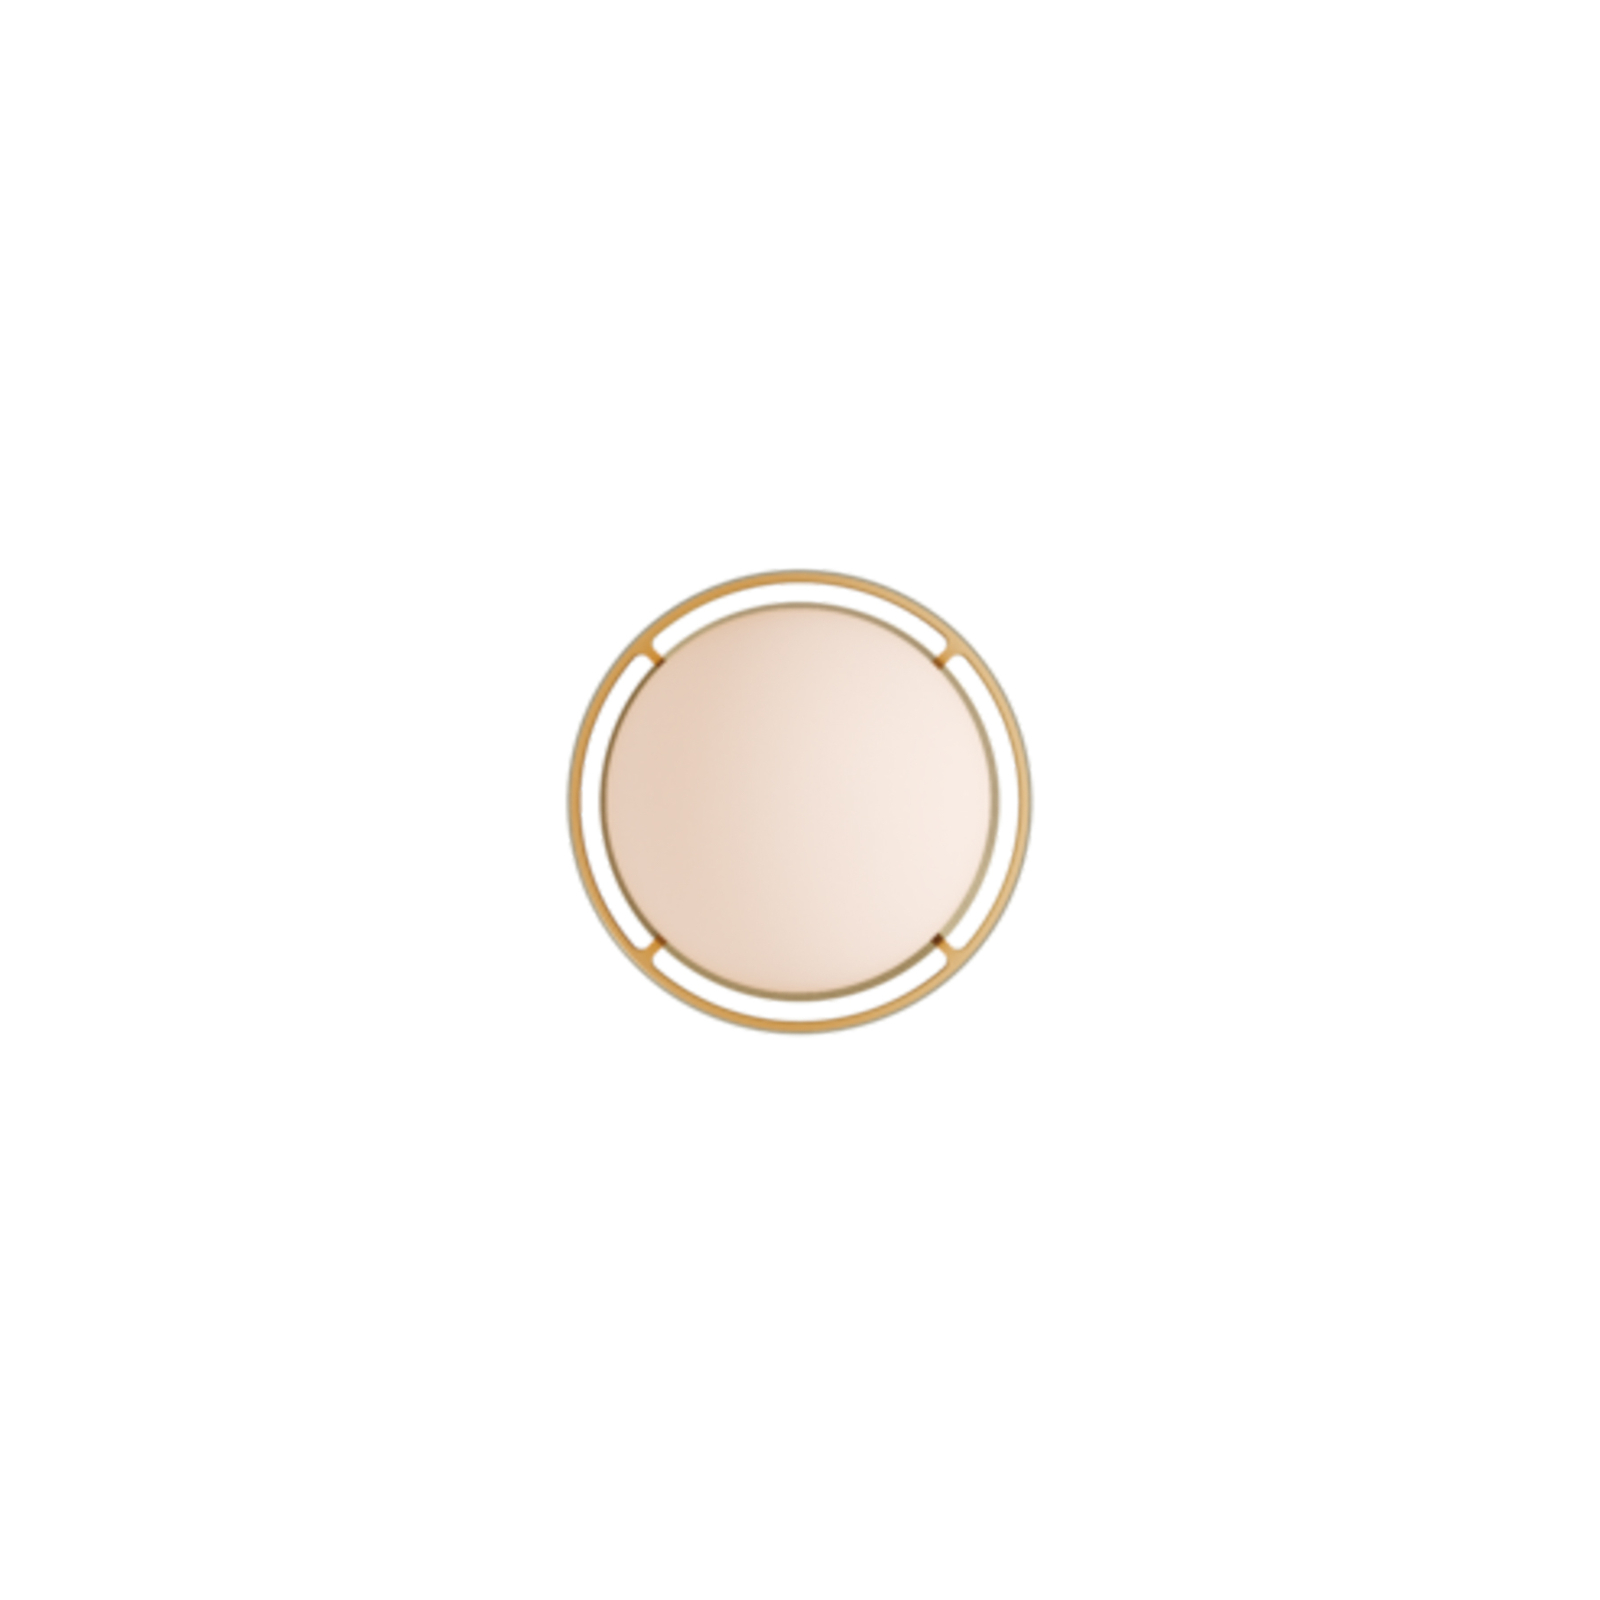 Tala Wandleuchte Loop small, Alu, LED-Globe III, gold